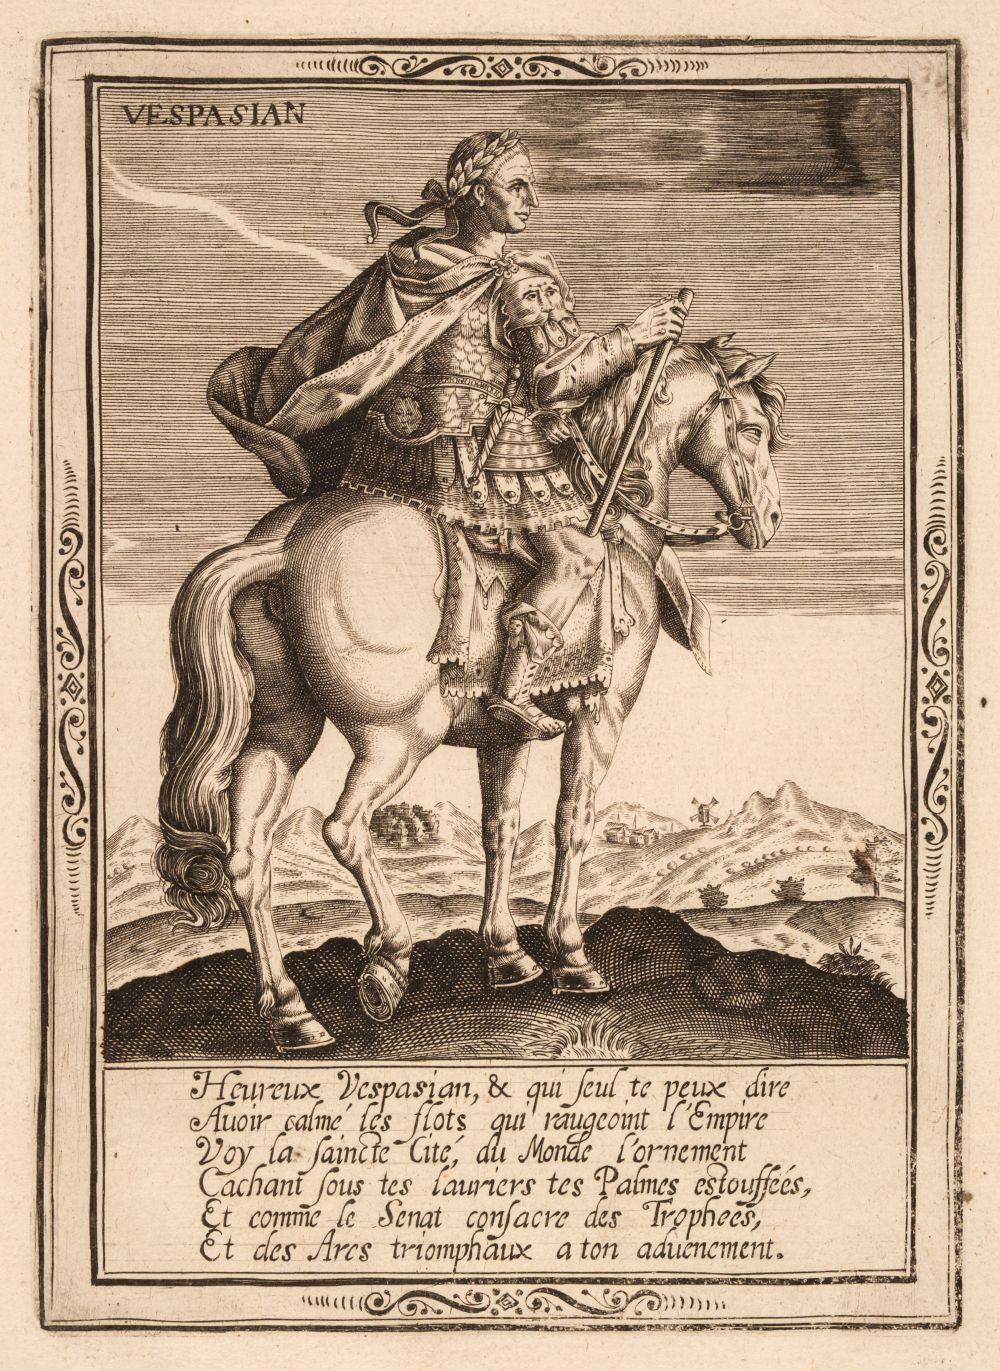 D. Pelletier (early 17th century), The Twelve Emperors, after Jan van der Straet, 1611